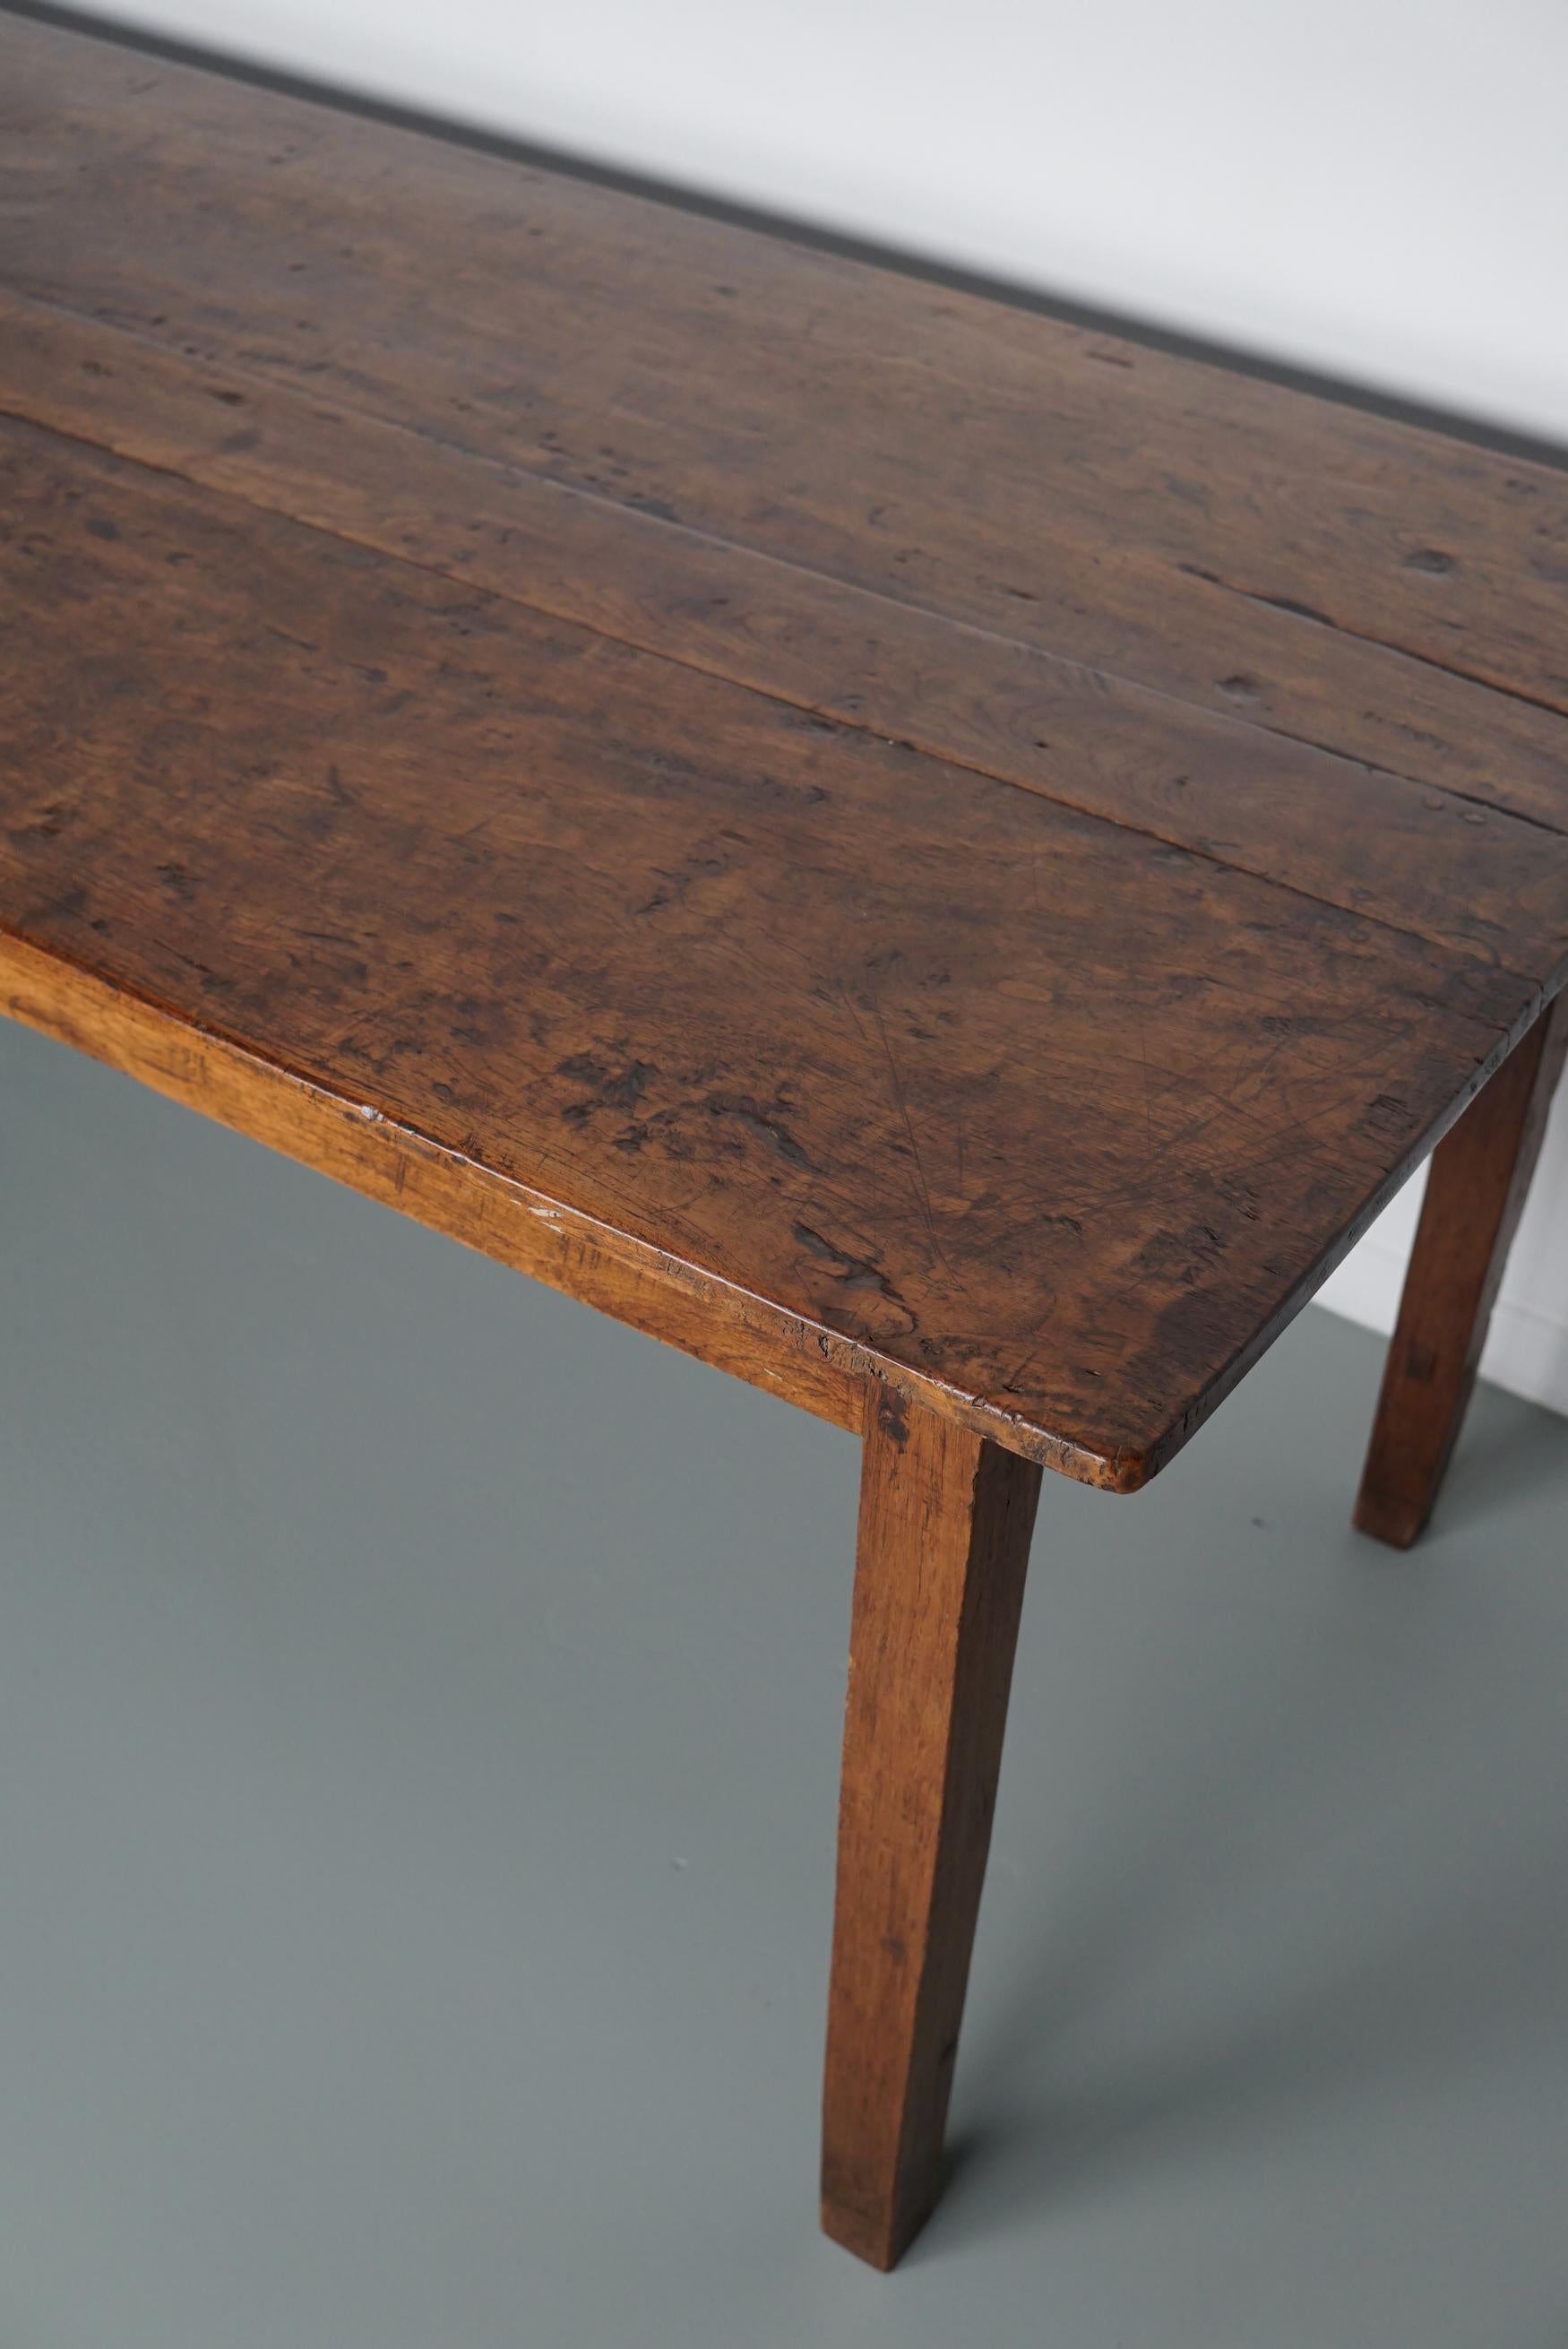 Dieser elegante Tisch wurde Anfang des 20. Jahrhunderts in den Niederlanden/Indonesien hergestellt. Er hat eine Tischplatte aus großen Holzplatten. Der Tisch wurde aus massivem indonesischem Fruchtholz mit einer schönen Maserung gefertigt. Er hat